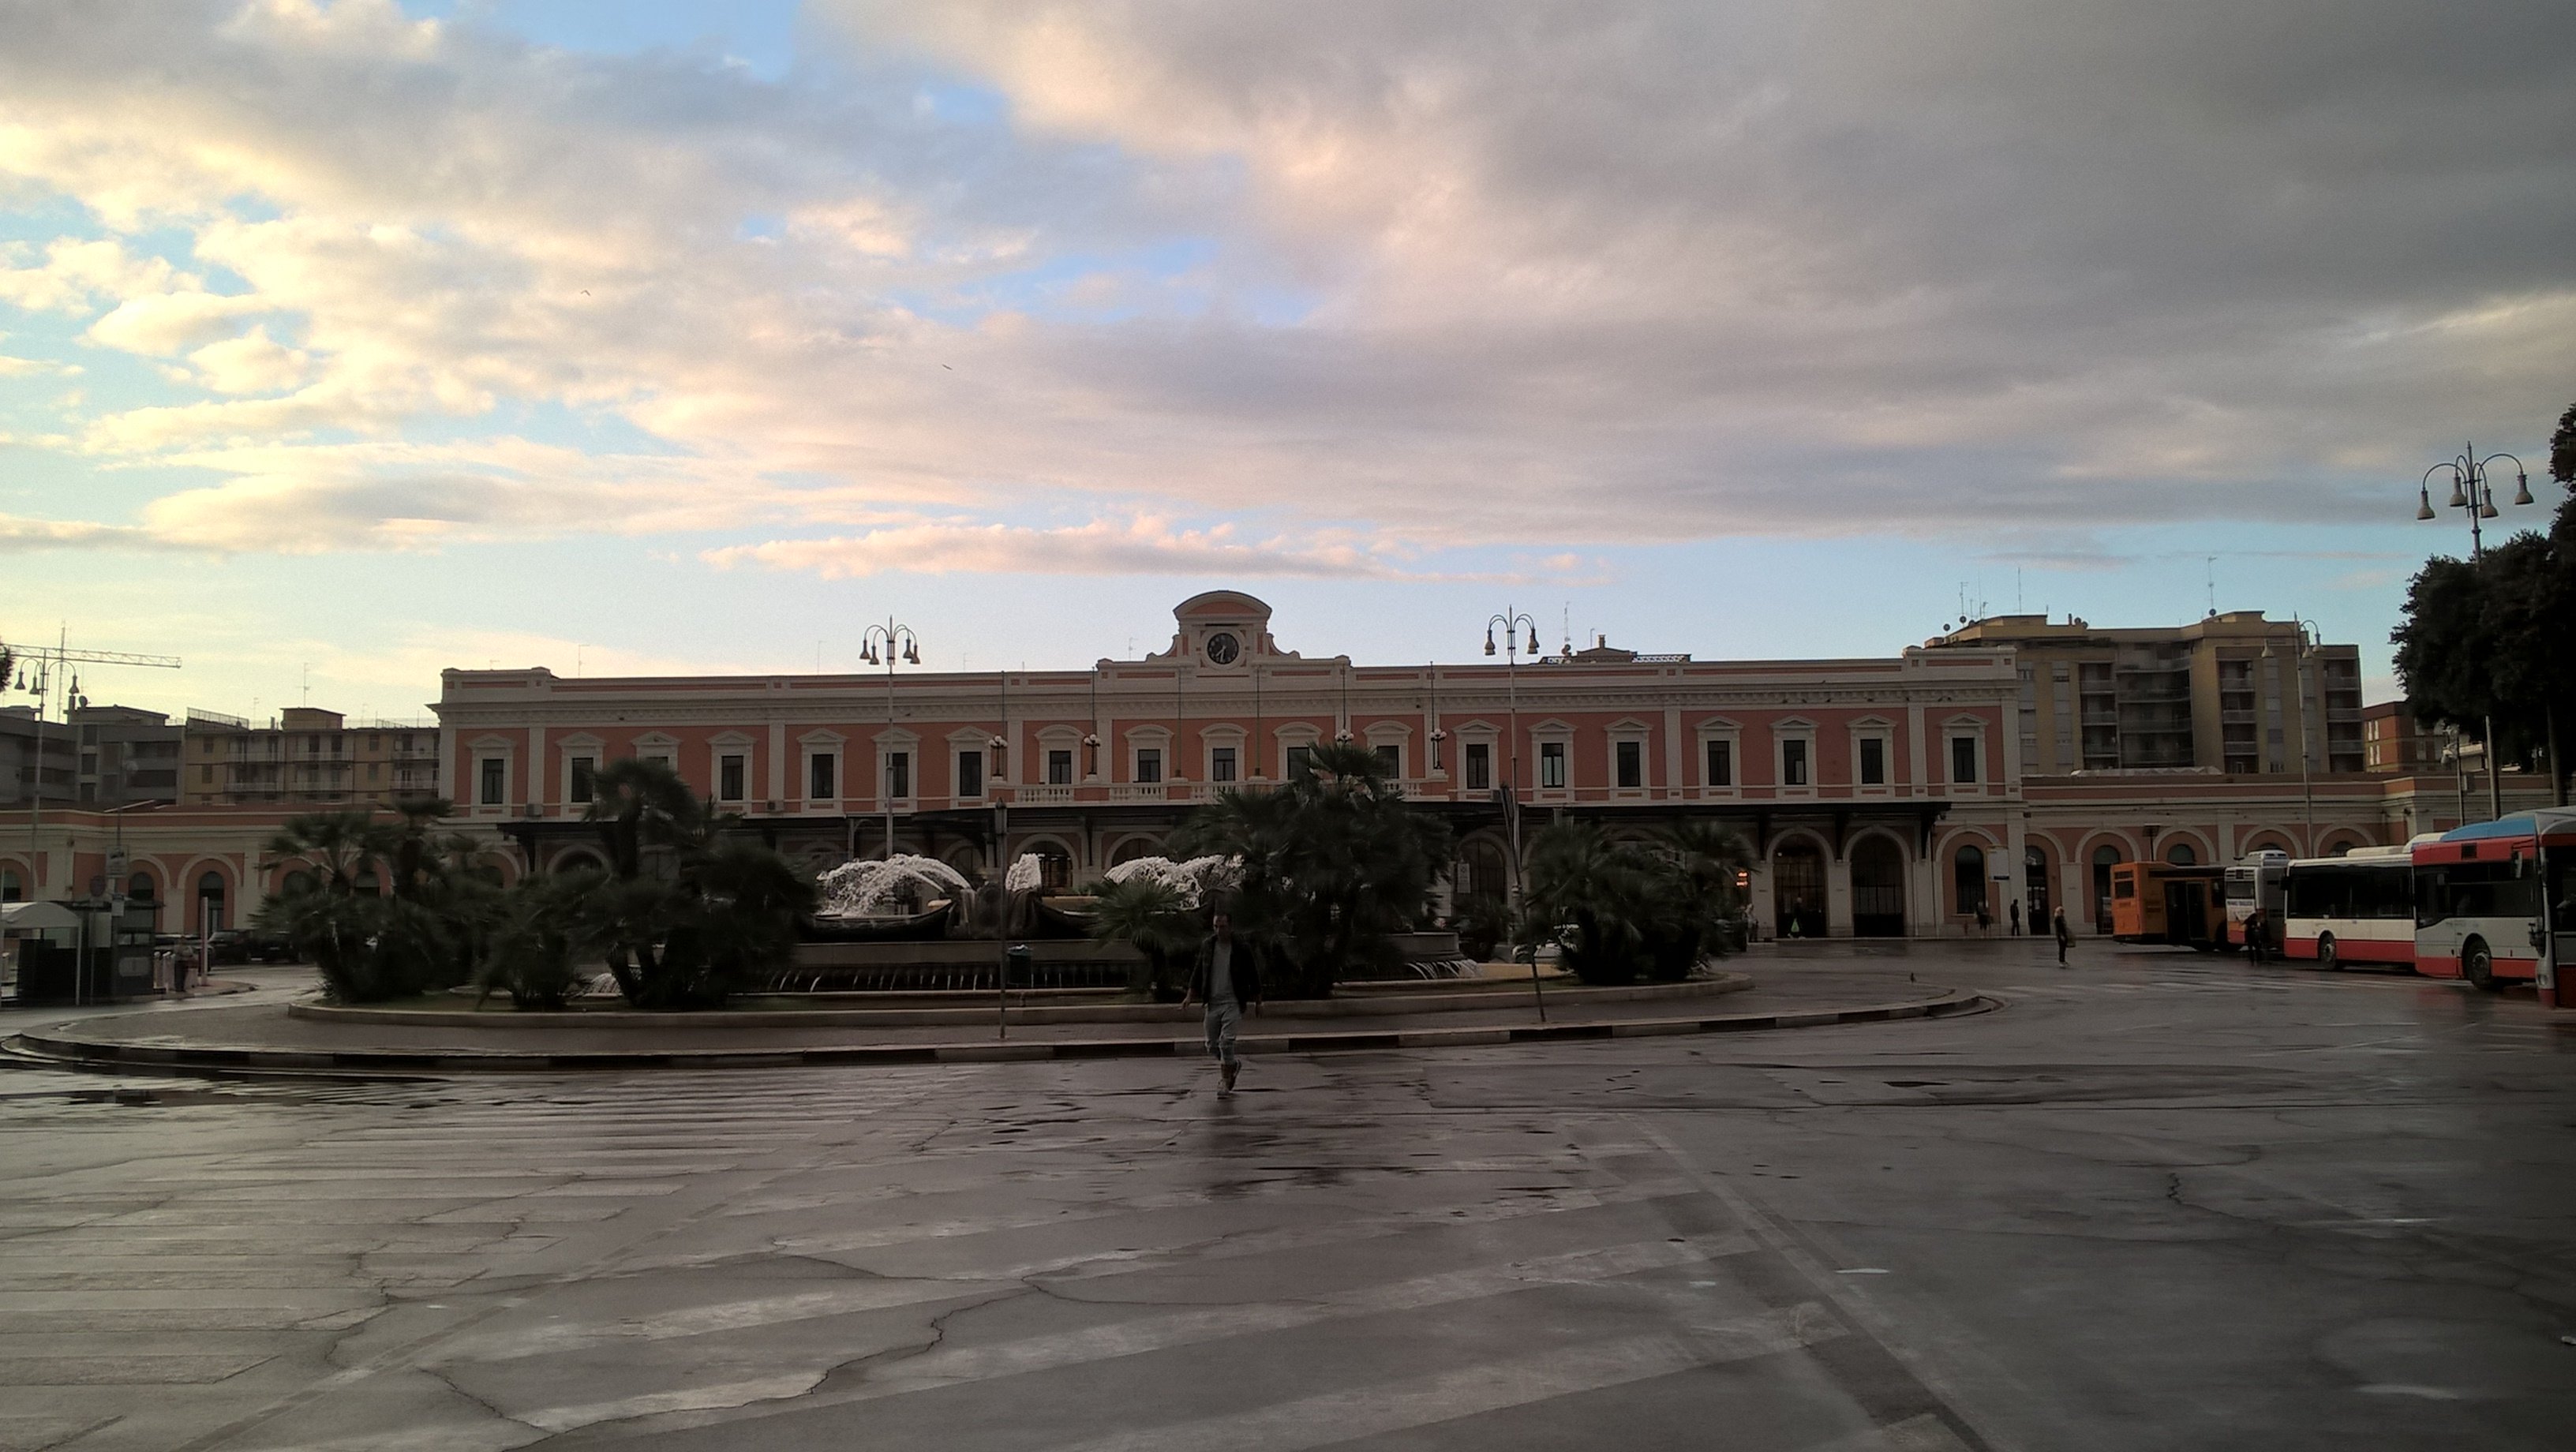 Stazione Bari Centrale